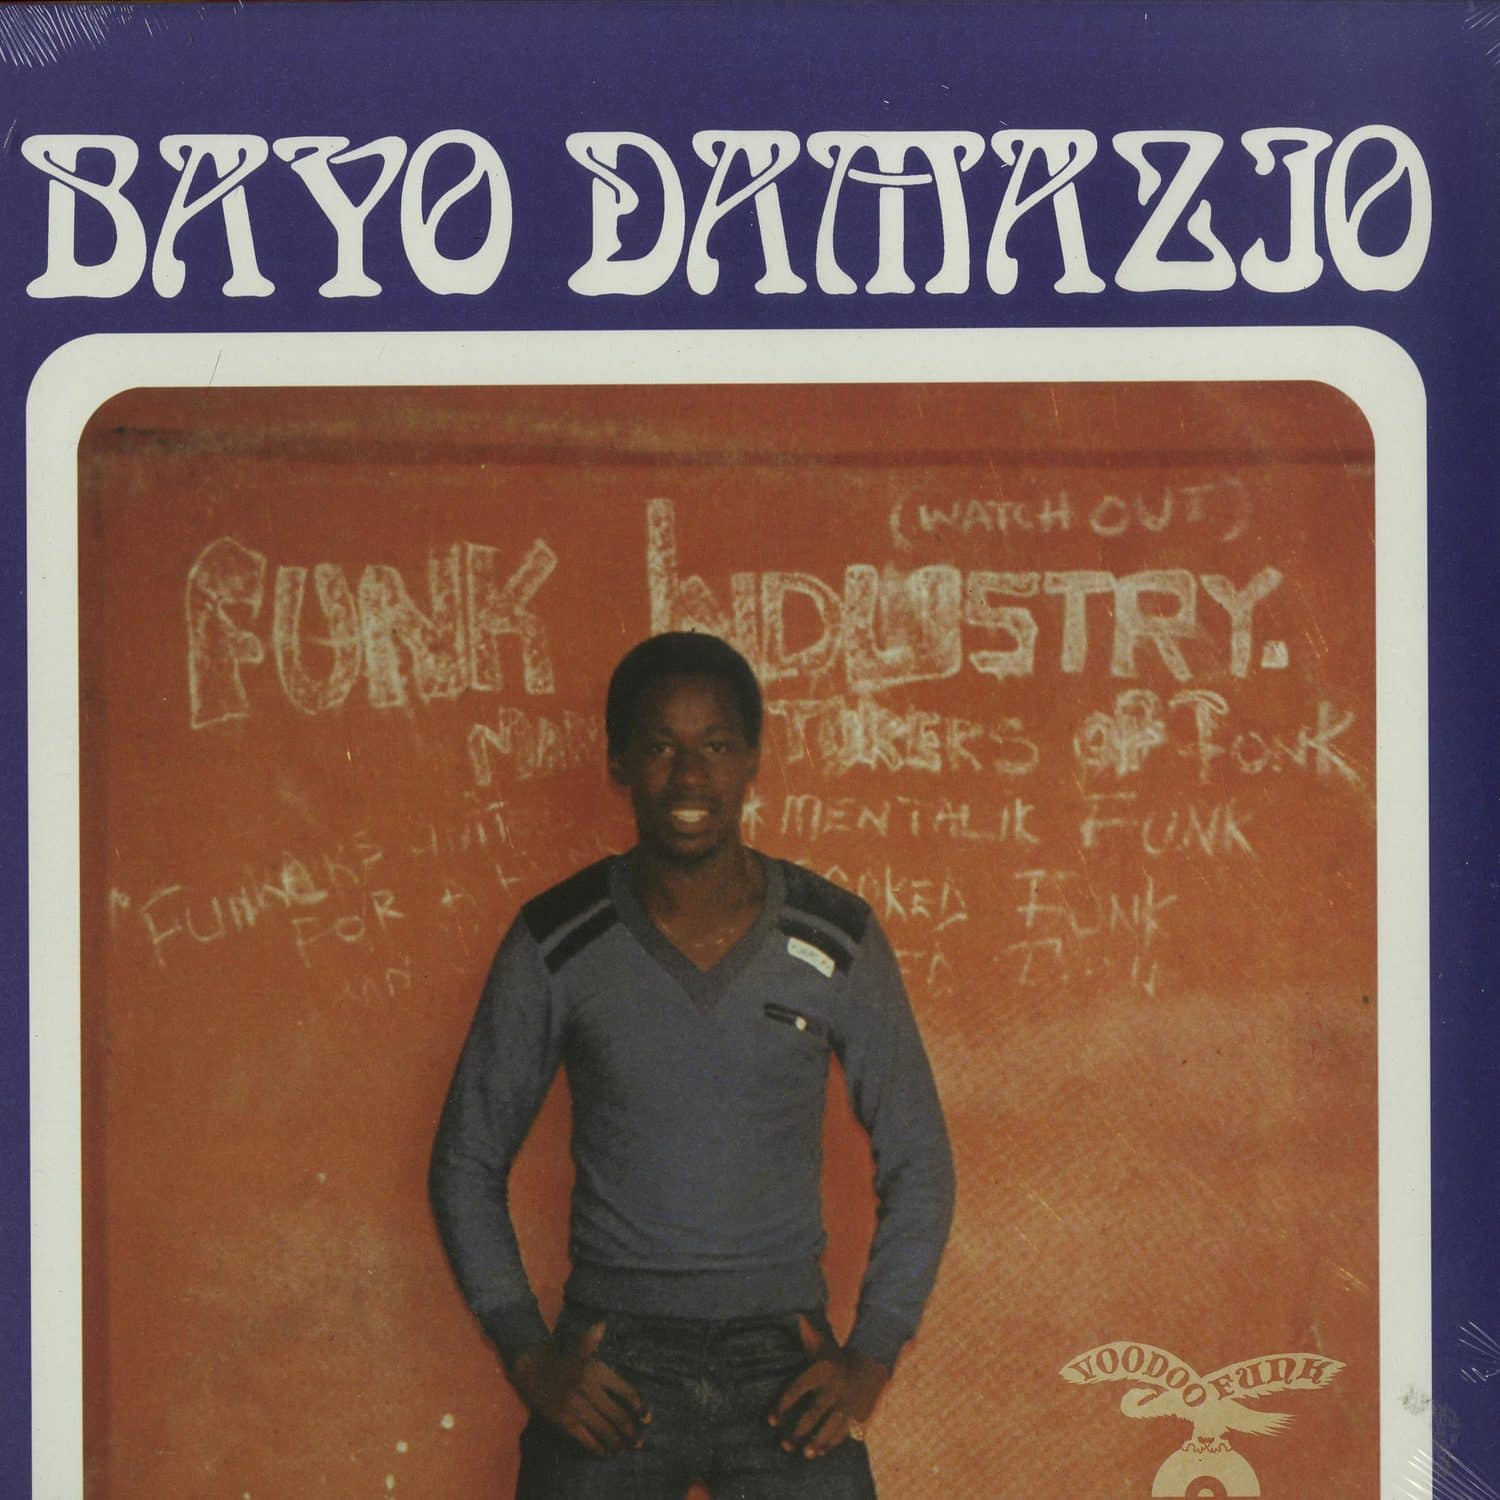 Bayo Damazio - LISTEN TO THE MUSIC